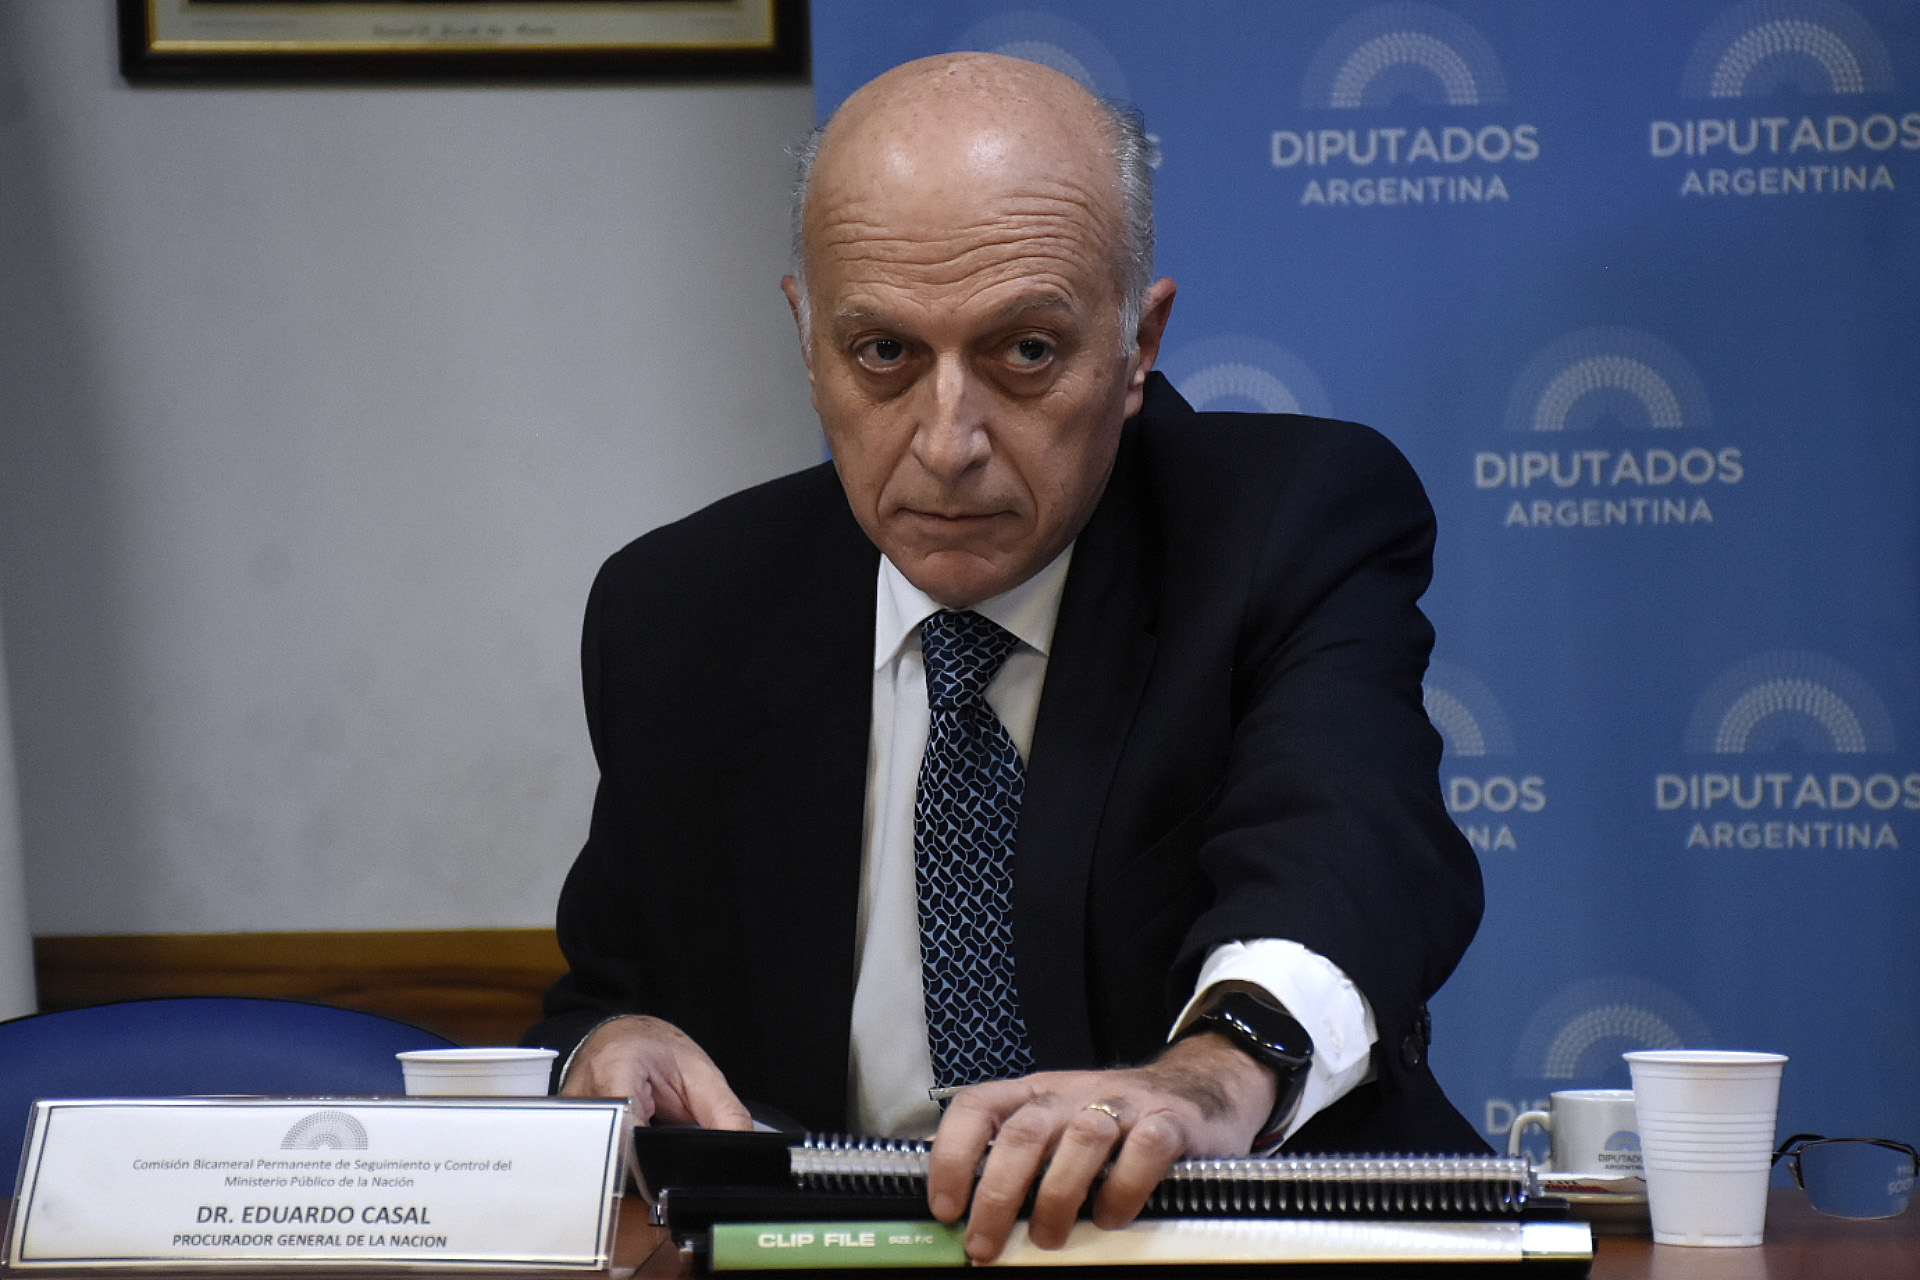 El confirmado ministro de Justicia, Martín Soria, cuestionó al procurador interino Eduardo Casal por estar "atornillado" al cargo. (Nicolás Stulberg)